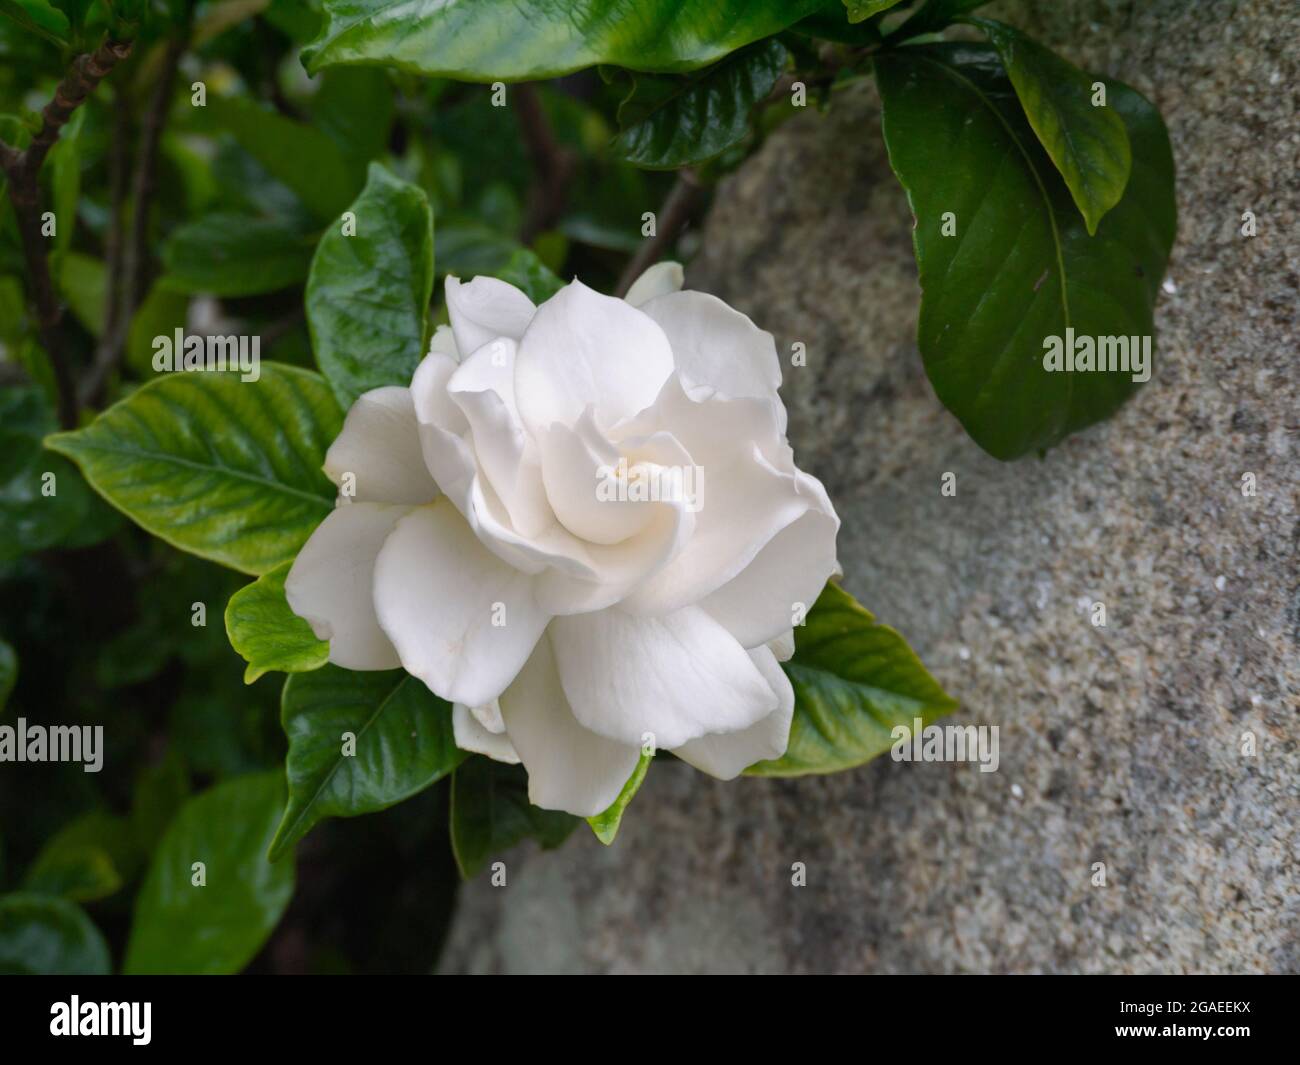 Gardenia jasminoides plante à fleurs dans le jardin. Fleur blanche parfumée  et congé vert brillant Photo Stock - Alamy